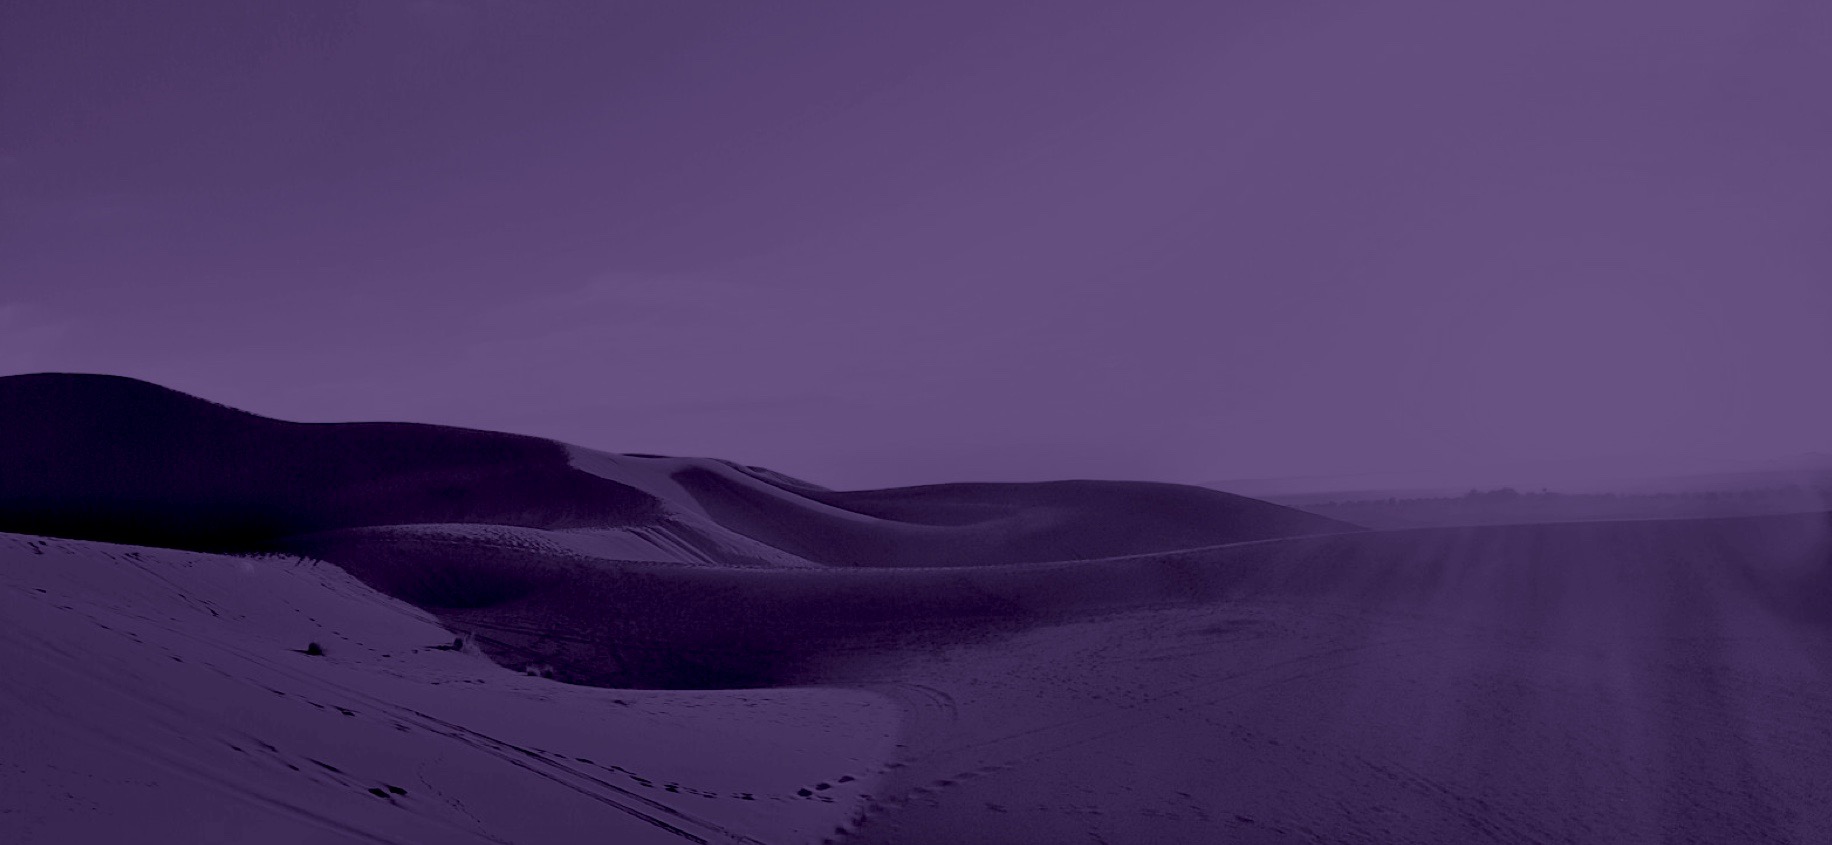 紫の砂漠